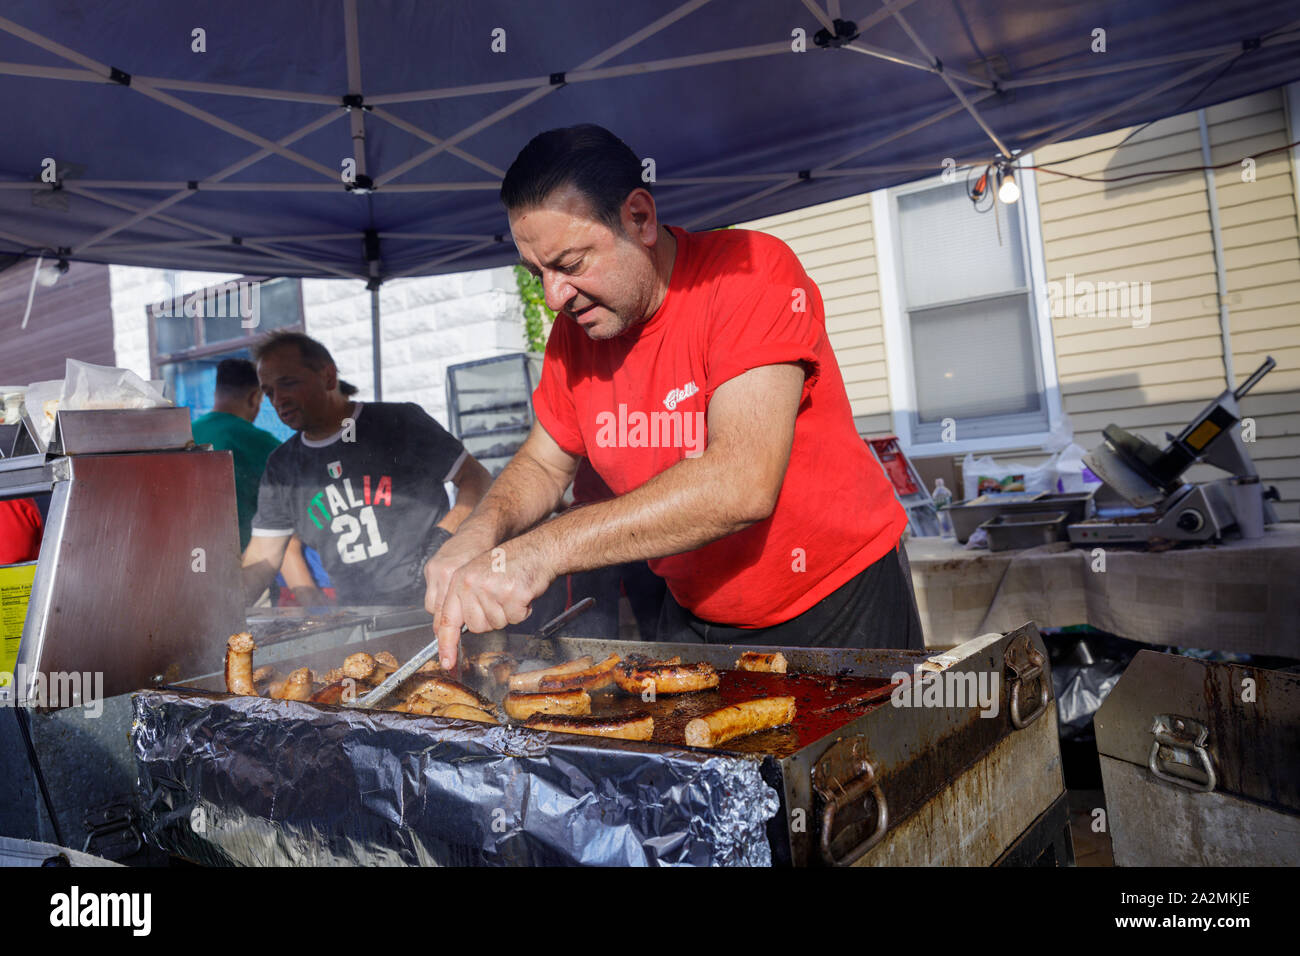 Festival italiano, Schenectady, New York: Uomo salsiccia di cottura sulla griglia. Foto Stock